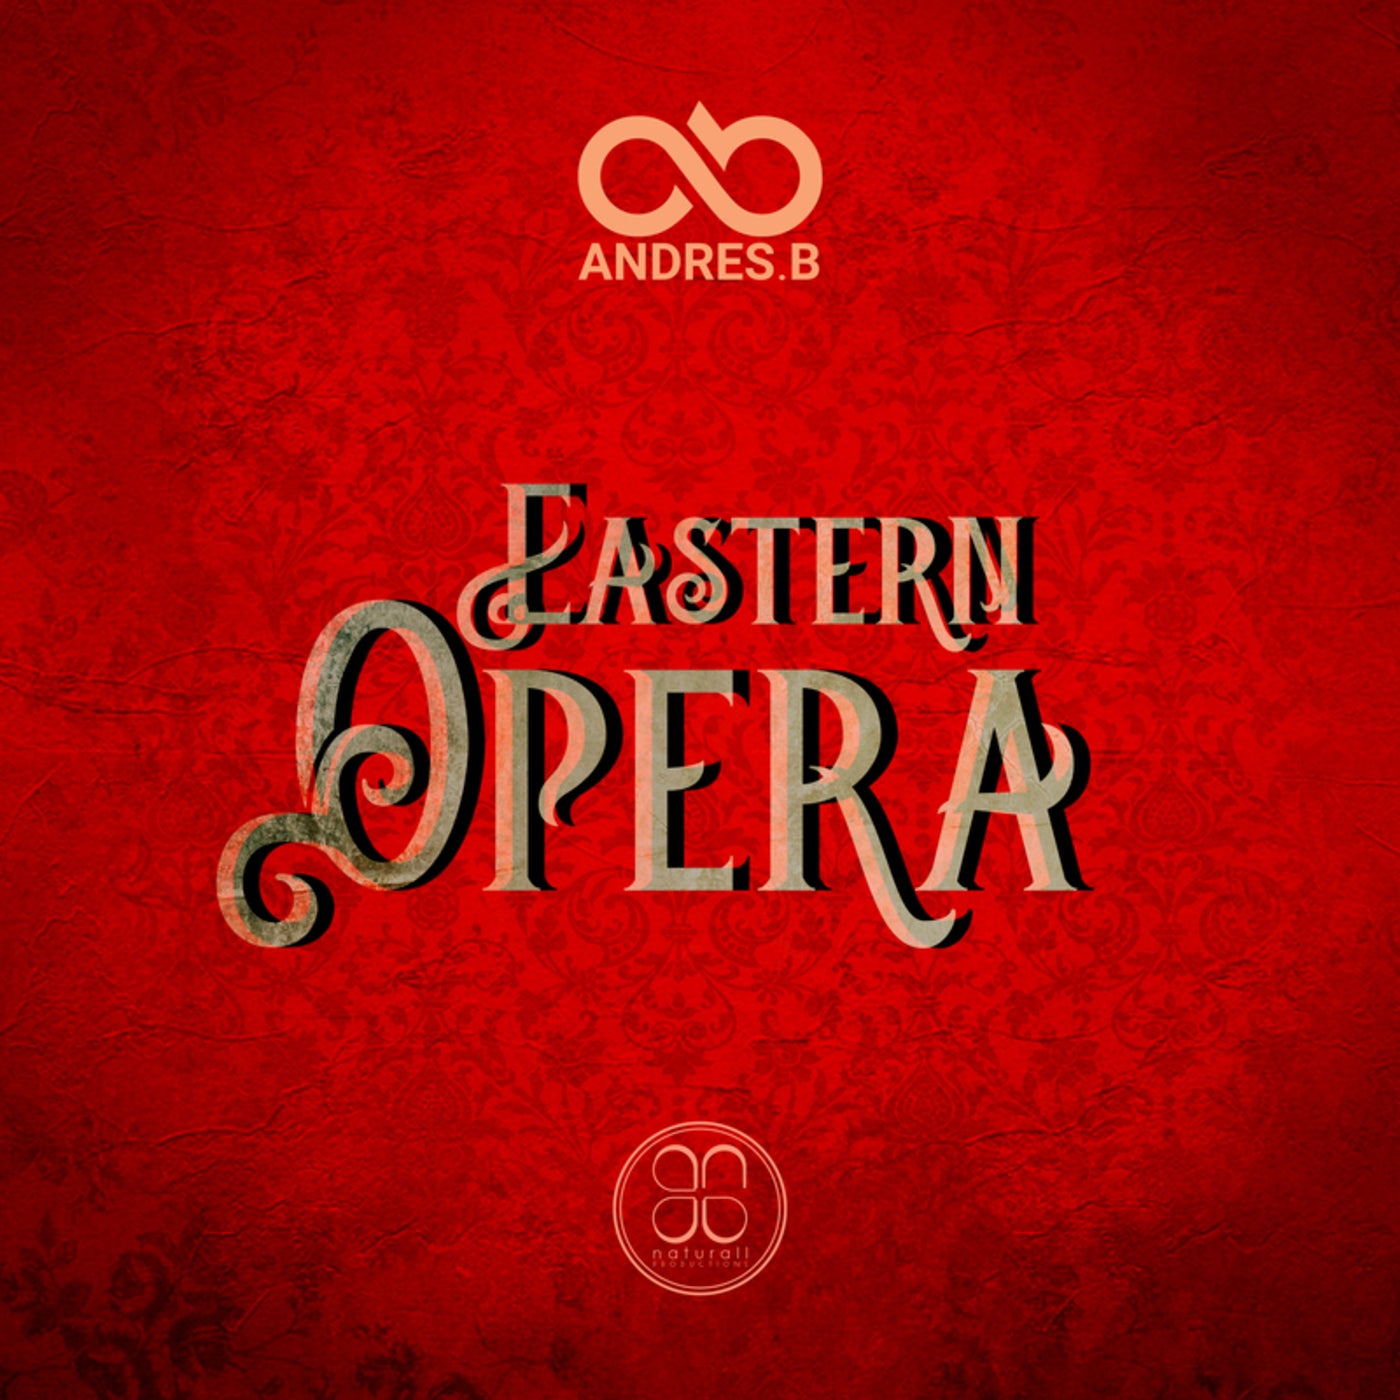 Eastern Opera